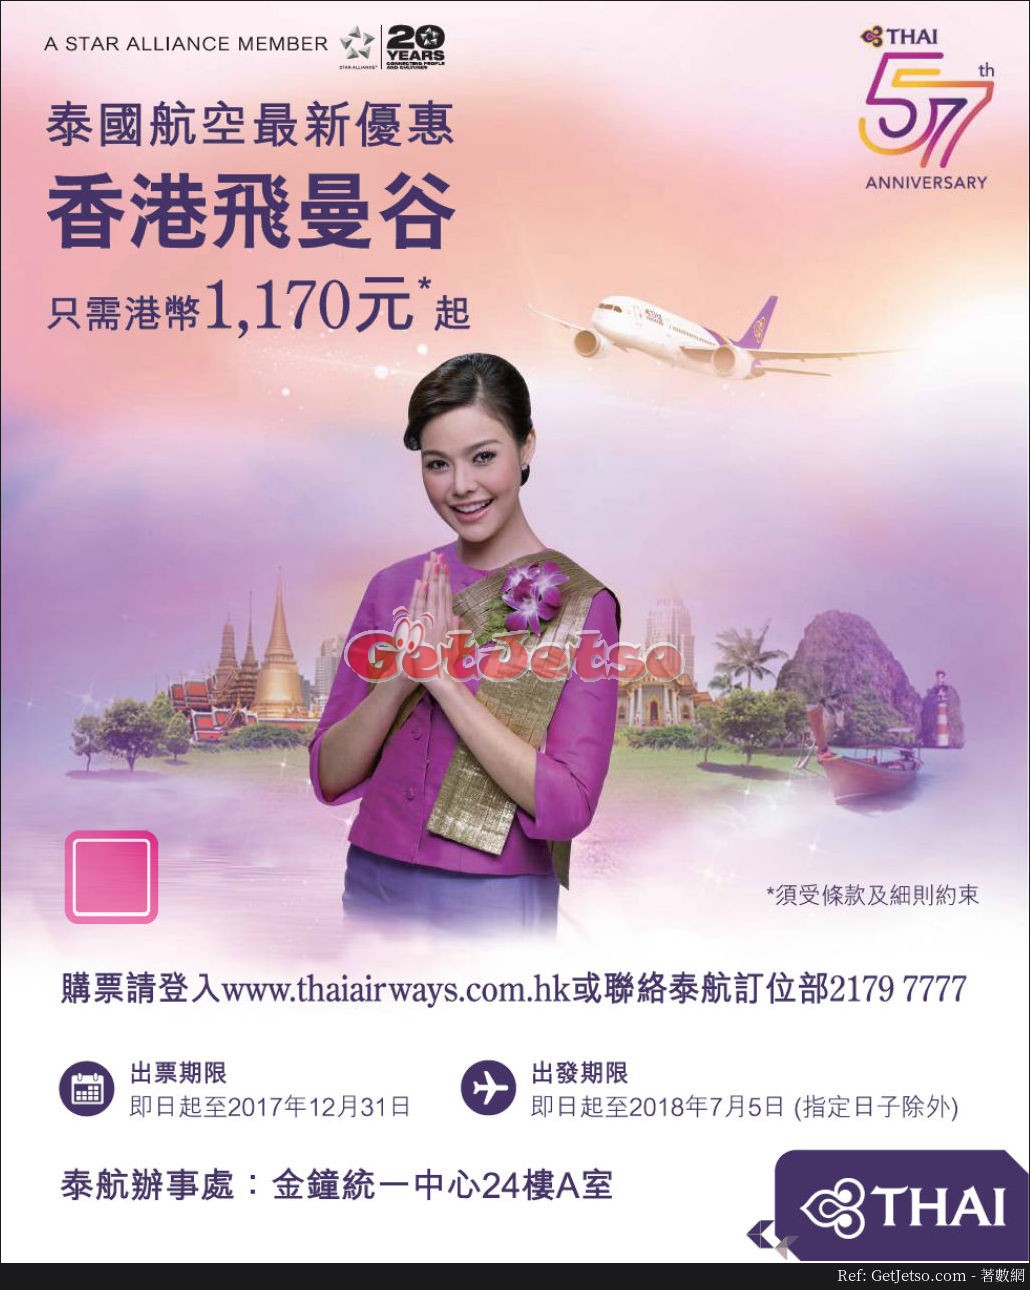 低至70曼谷機票優惠@泰國航空(至17年12月31日)圖片1